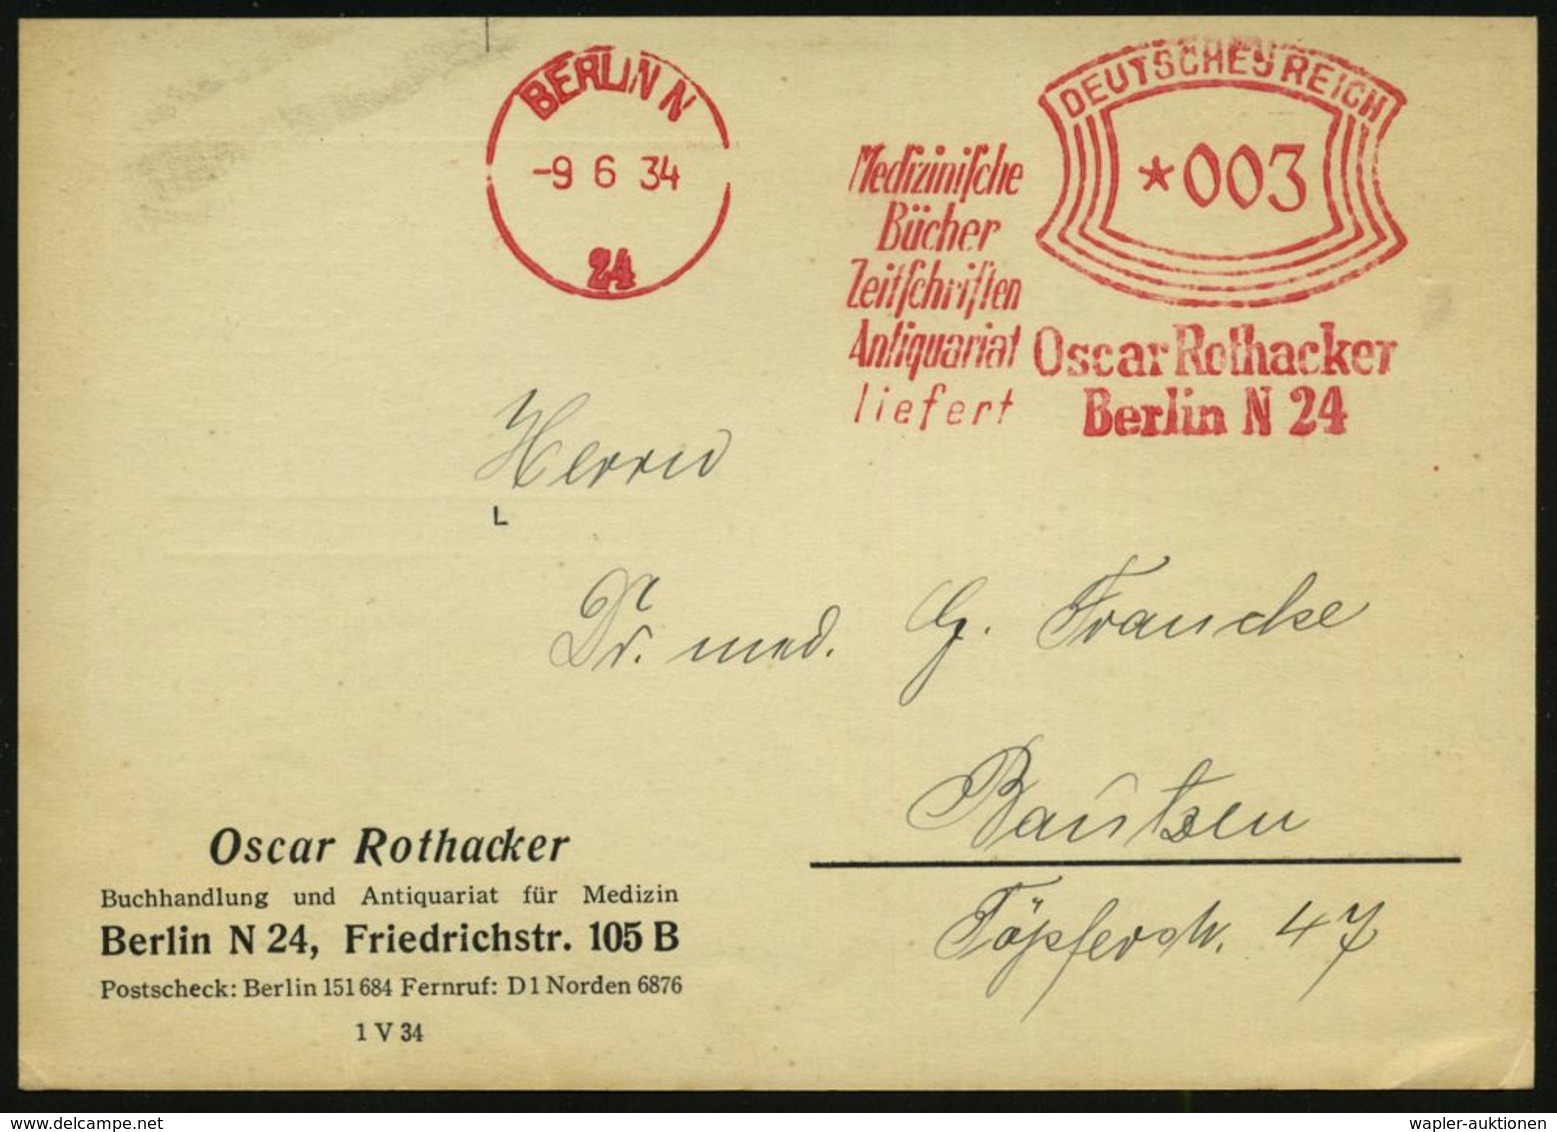 MEDIZIN / GESUNDHEITSWESEN : BERLIN N/ 24/ Medizin./ Bücher/ Zeitschriften/ Antiquariat/ Liefert/ Oscar Rothacker 1934 ( - Medicine